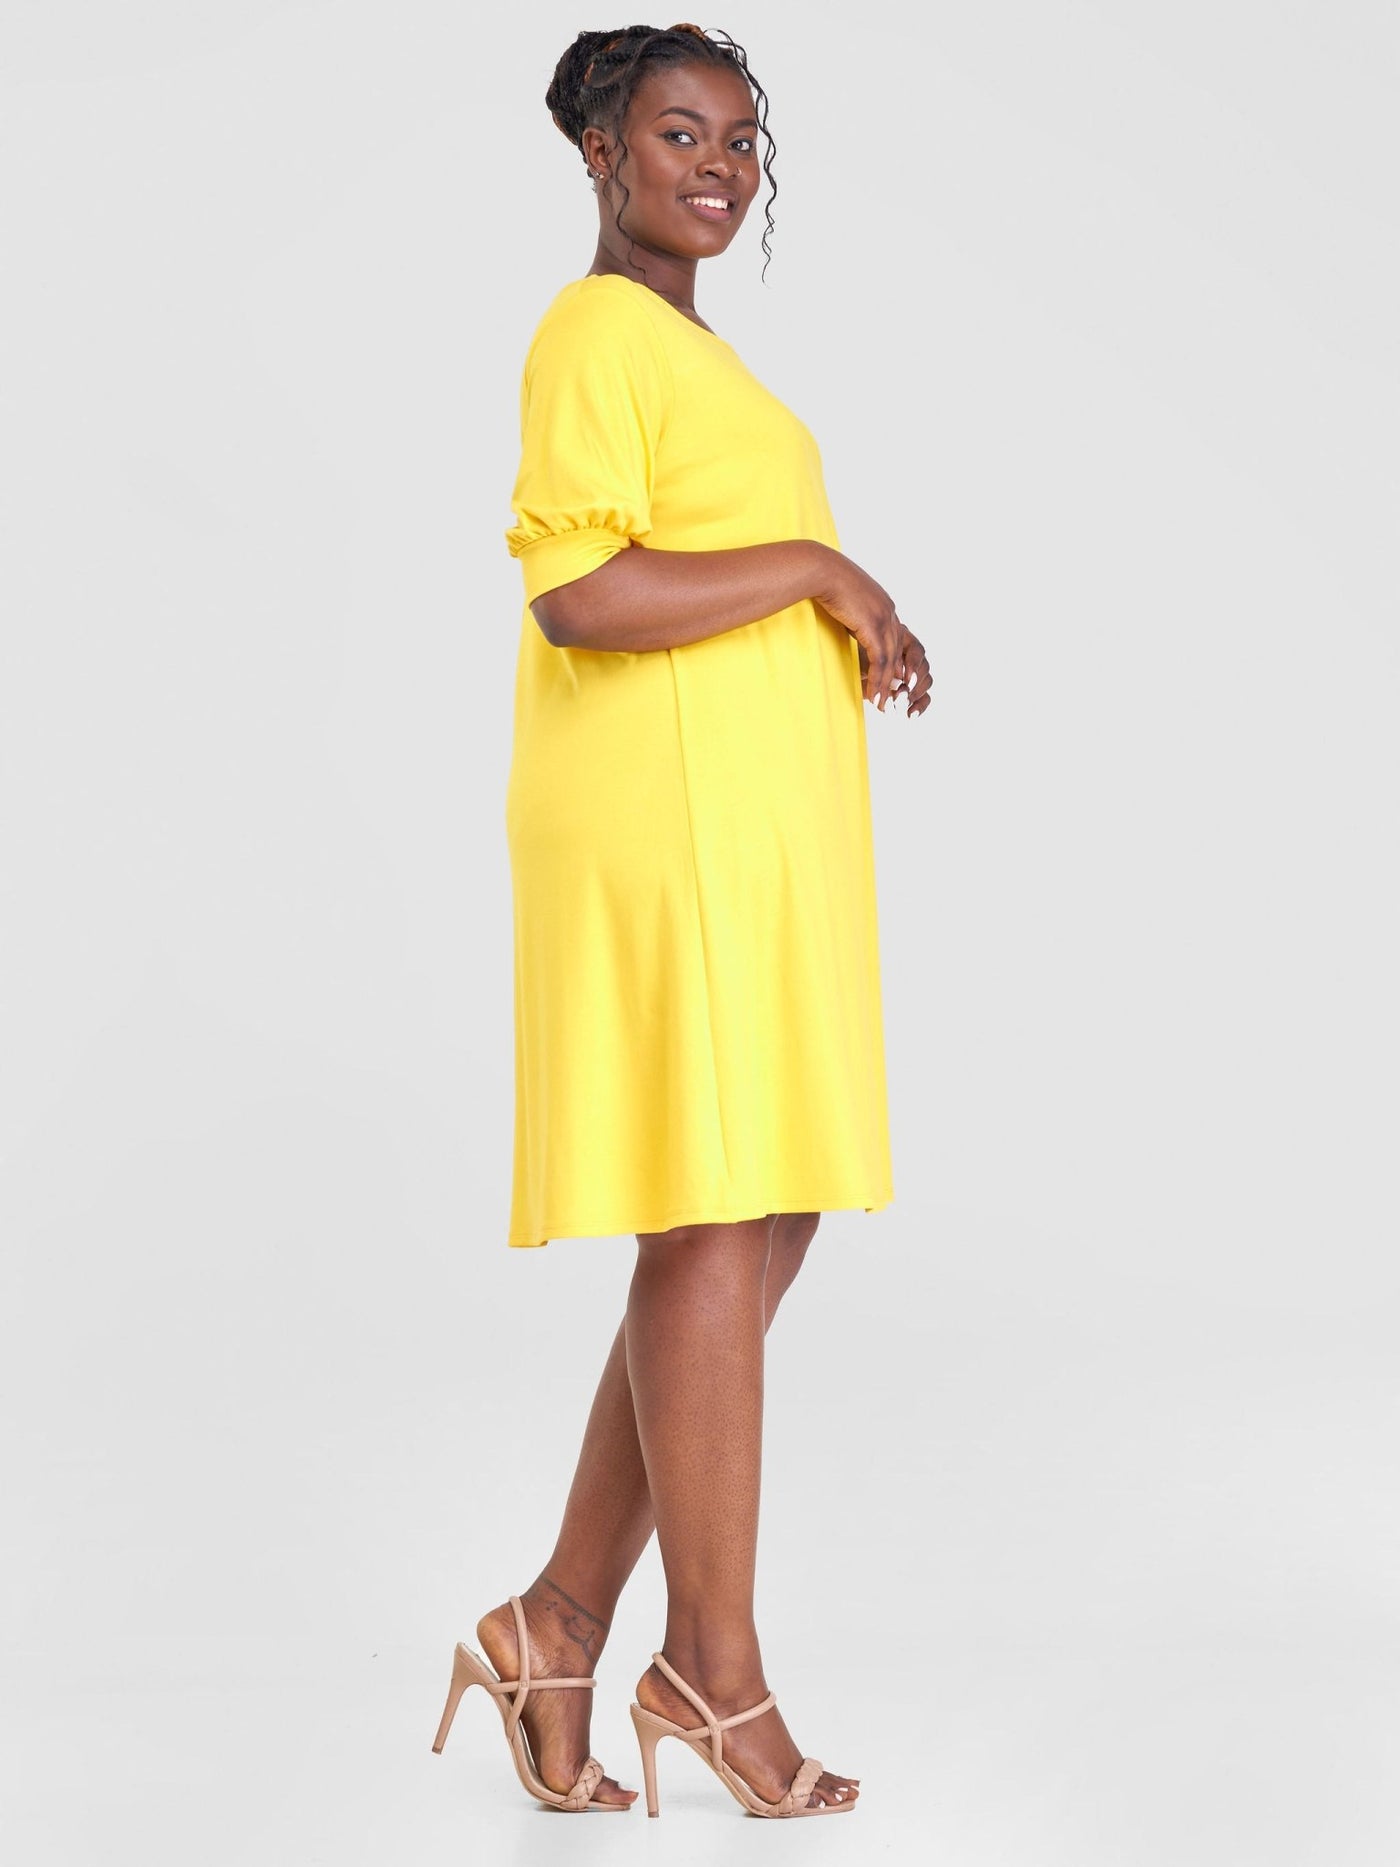 Vivo Tana Puff Sleeve A-Line Dress - Yellow - Shopzetu